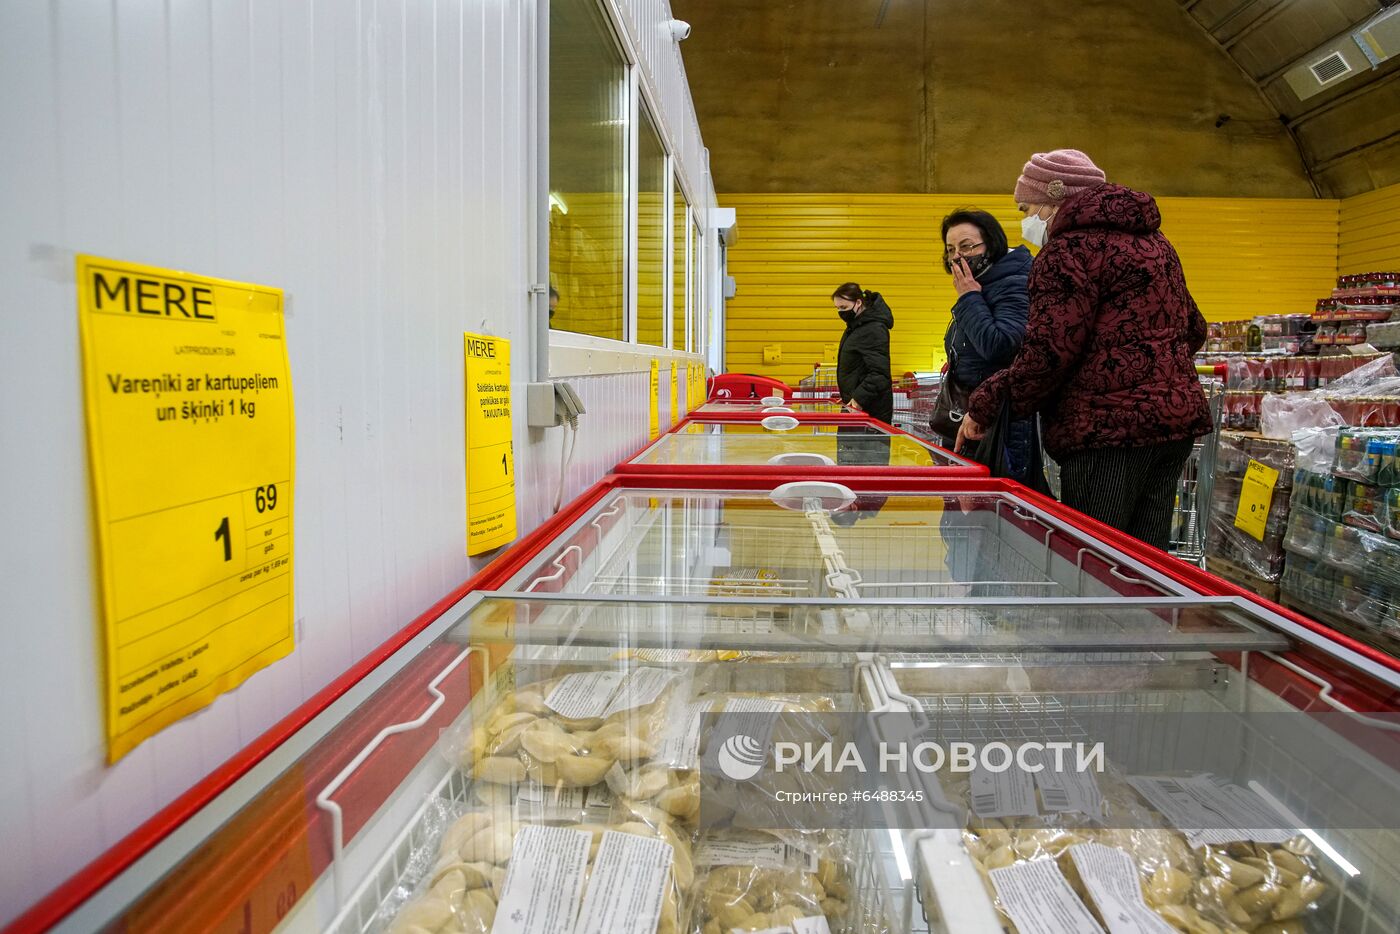 Магазин российской торговой сети "Светофор" (Mere) открылся в Риге